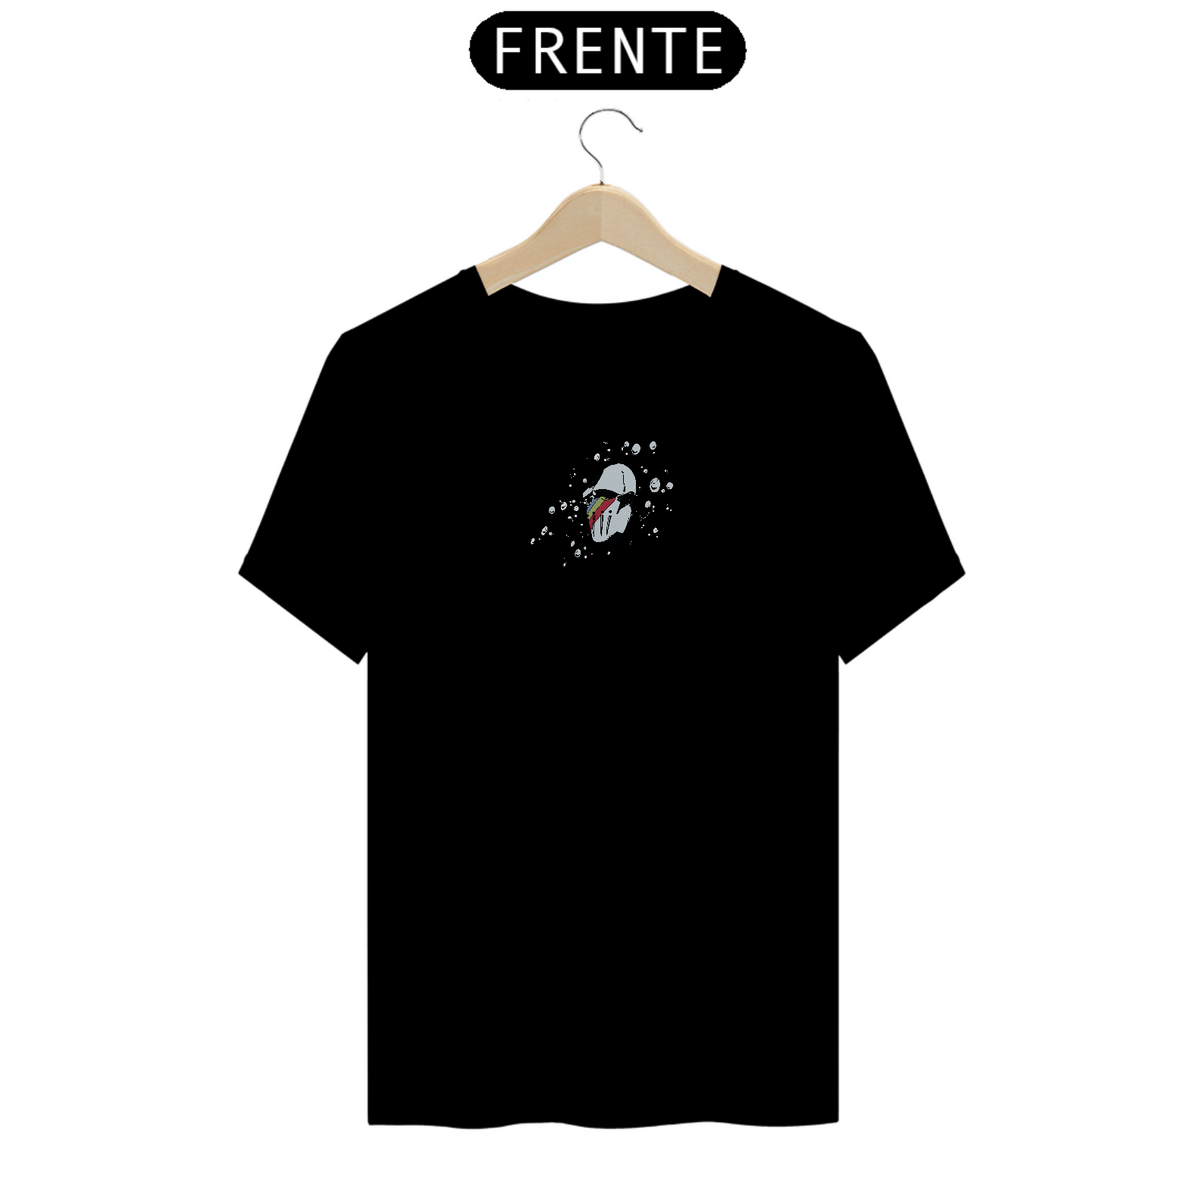 Nome do produto: Camiseta Black More Frente